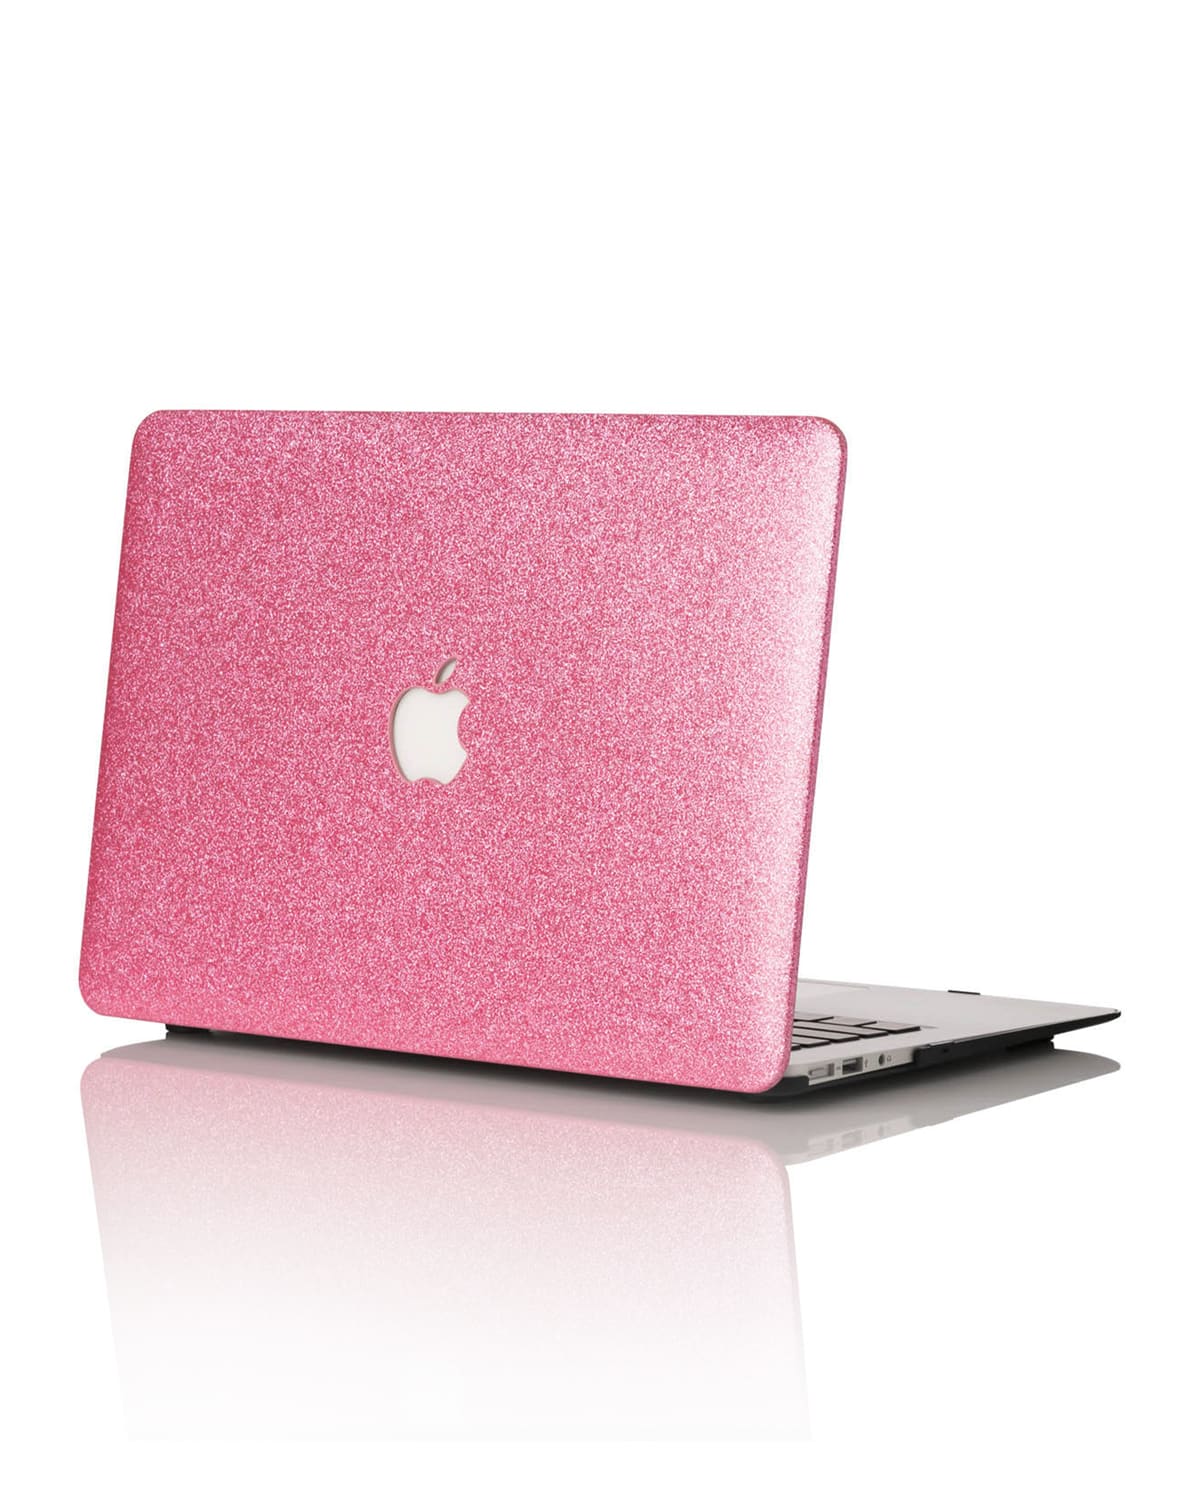 Glitter 13" MacBook Air Case (Model numbers A1466 & A1369)